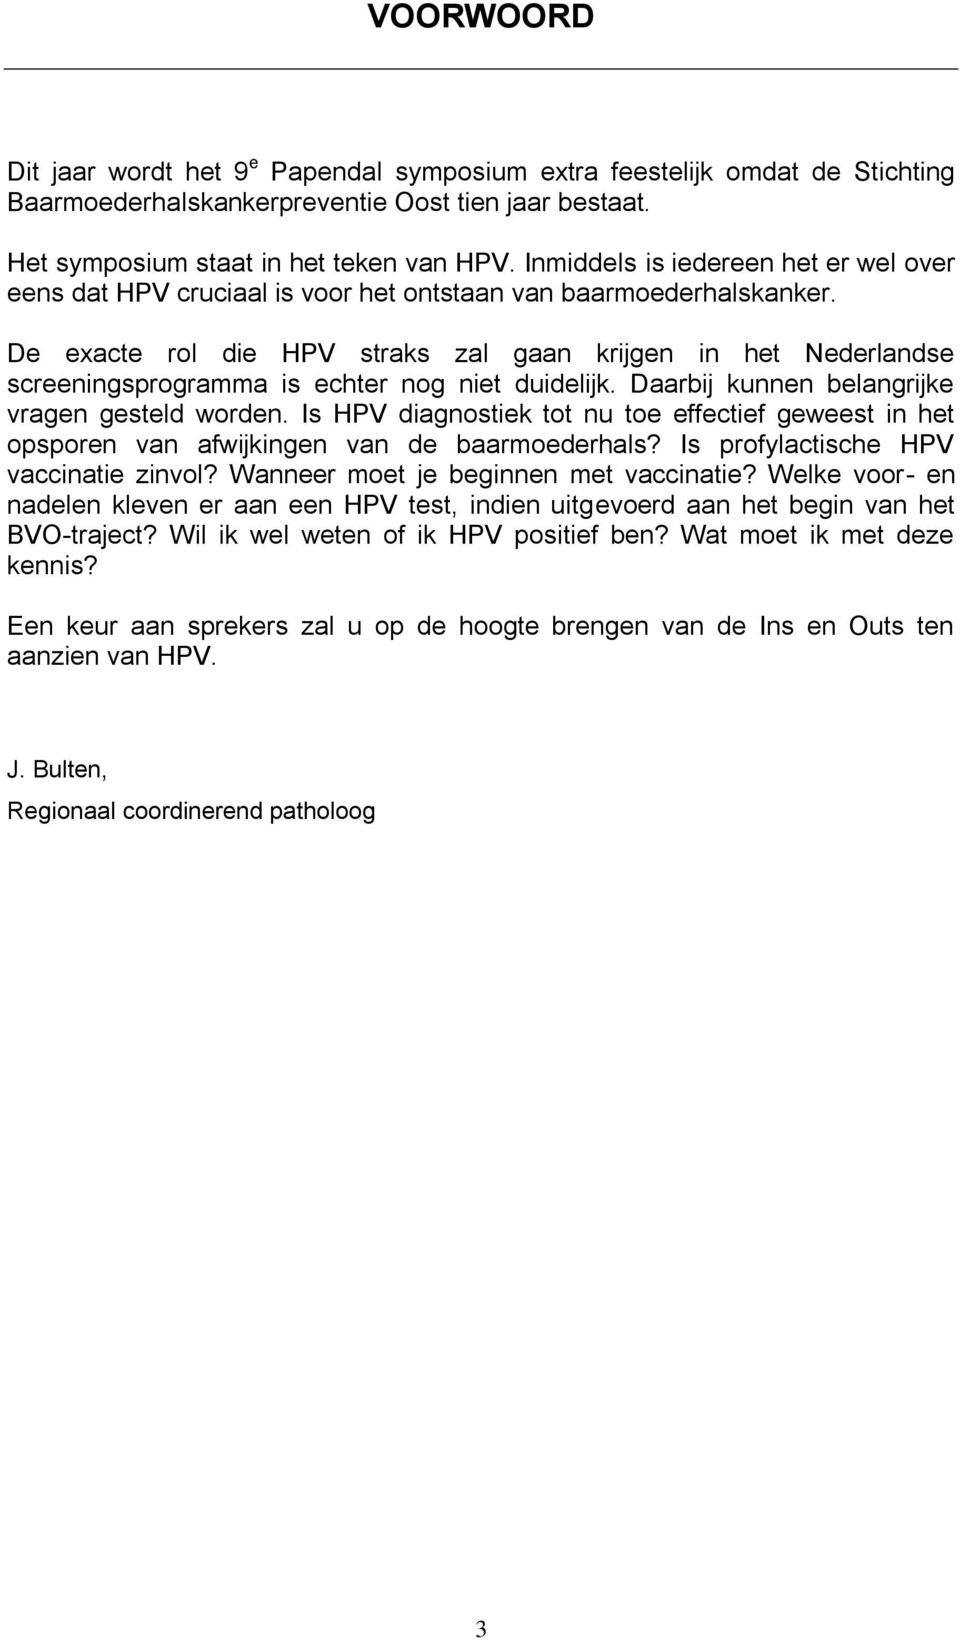 De exacte rol die HPV straks zal gaan krijgen in het Nederlandse screeningsprogramma is echter nog niet duidelijk. Daarbij kunnen belangrijke vragen gesteld worden.